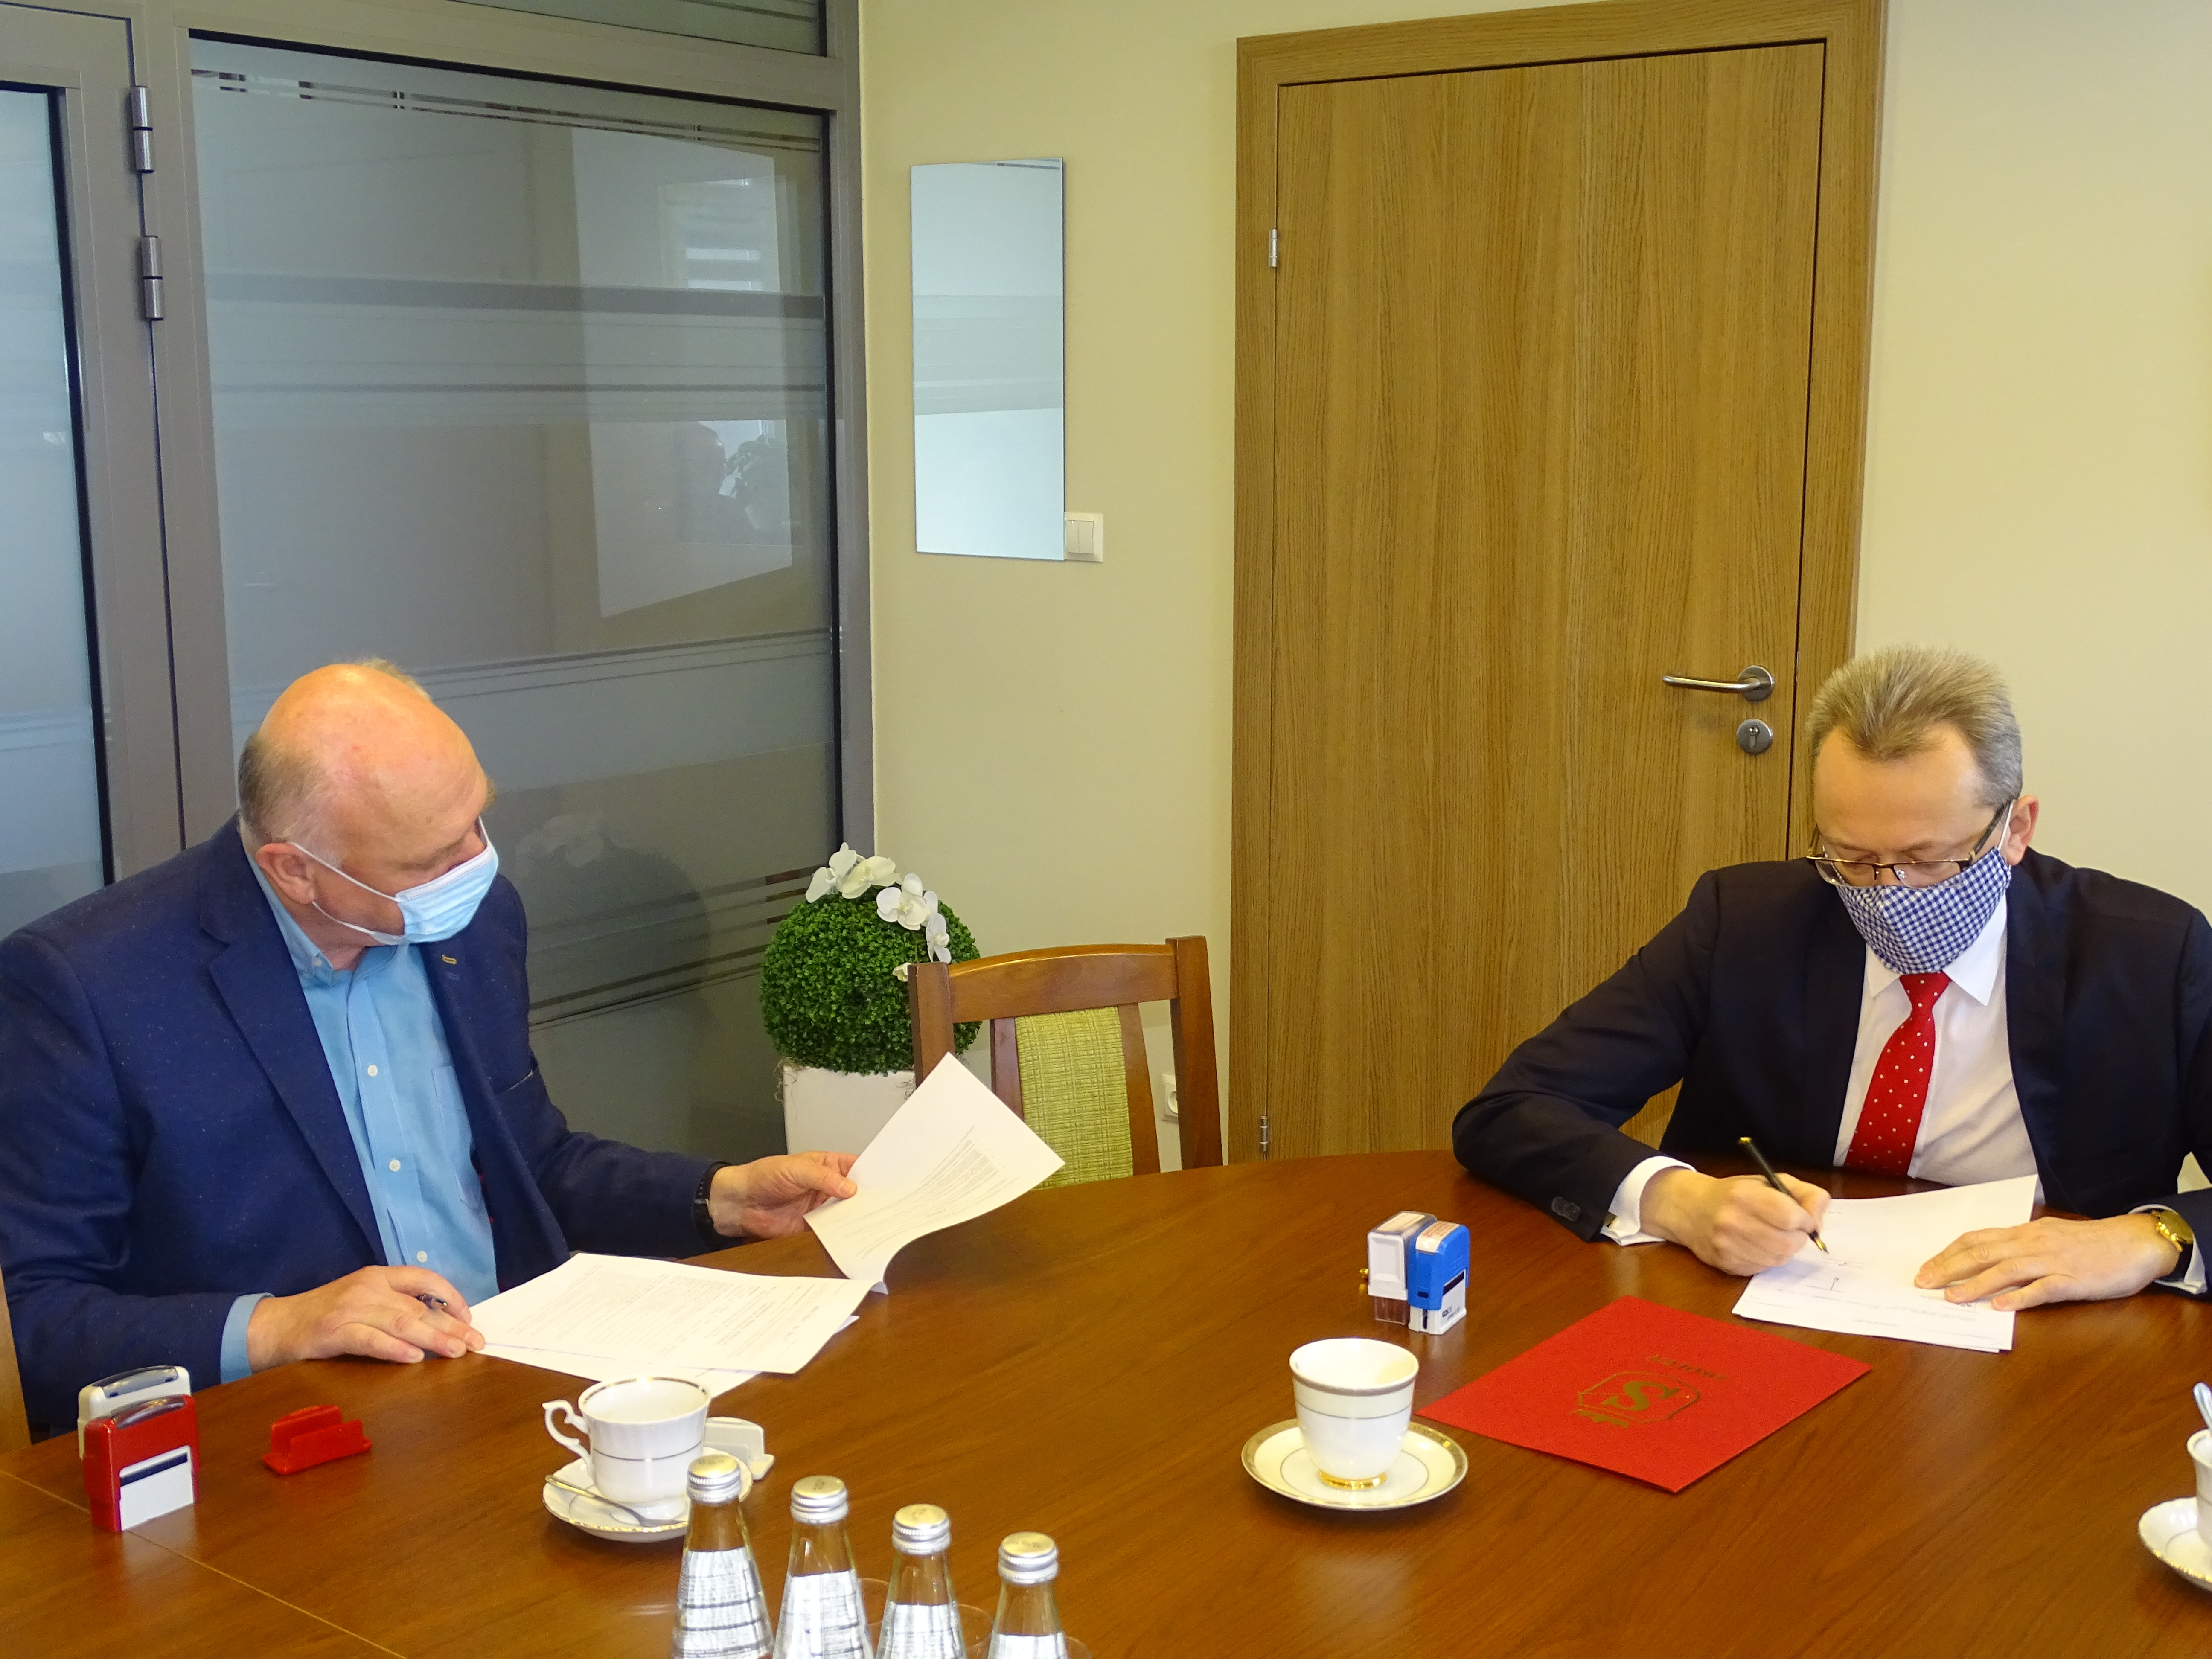 Burmistrz Zwolenia podpisał także umowę z inspektorem nadzoru inwestorskiego Włodzimierzem Maciaś